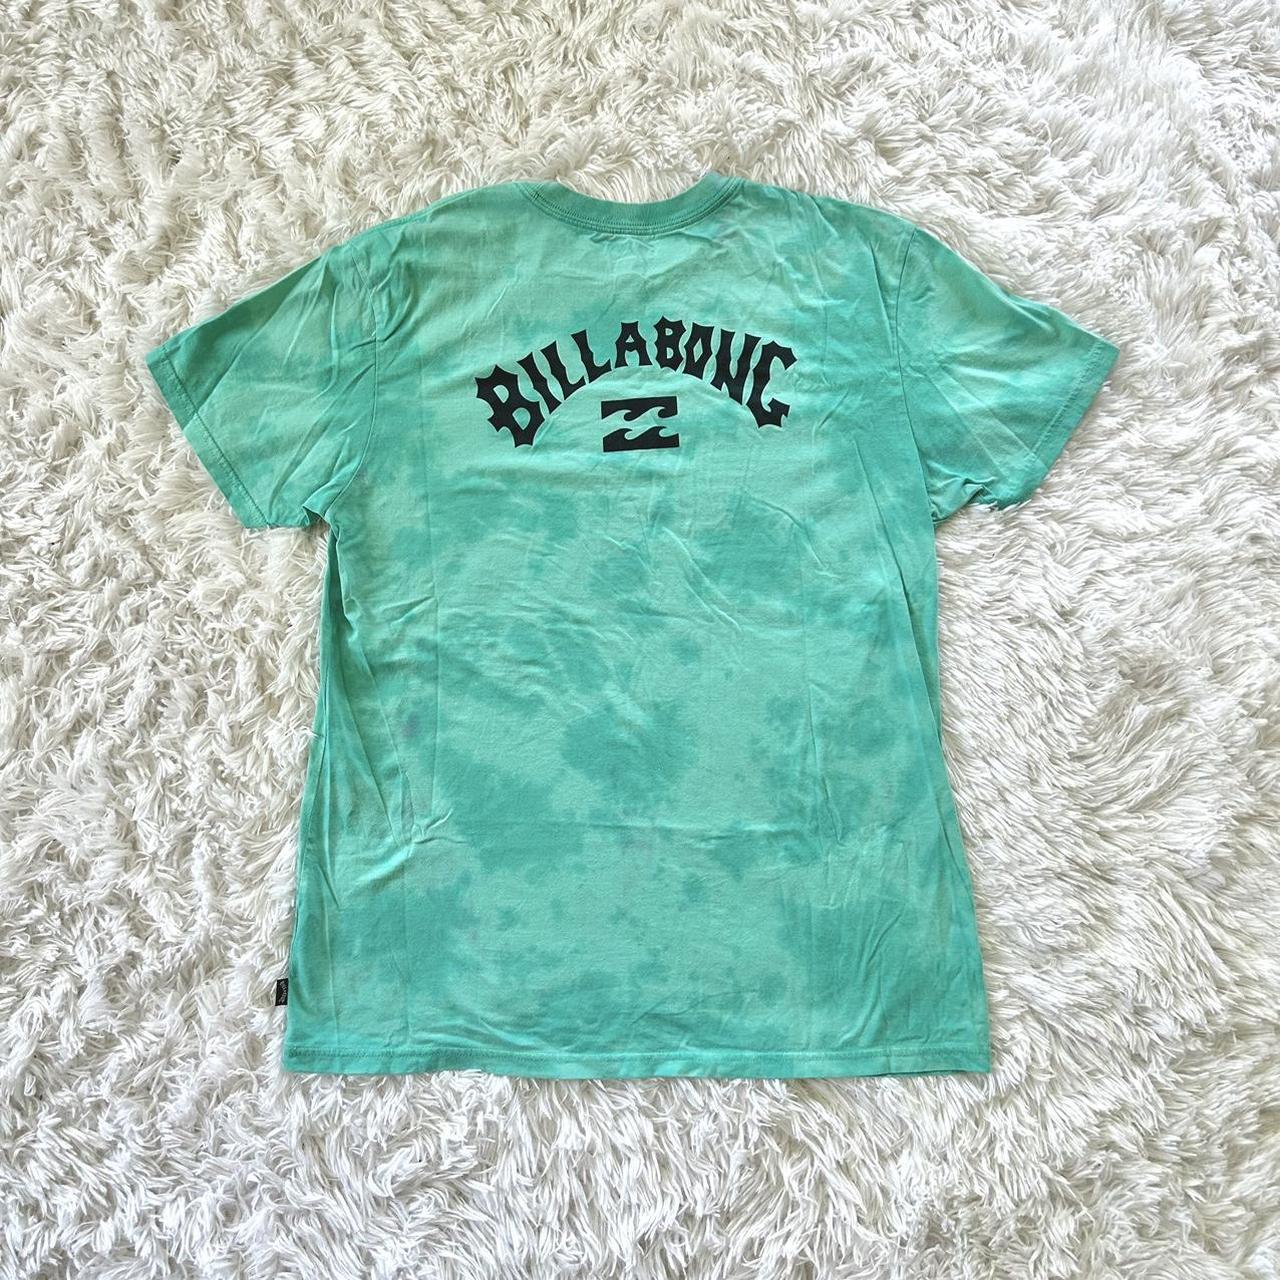 Billabong Women's Green and Blue T-shirt | Depop